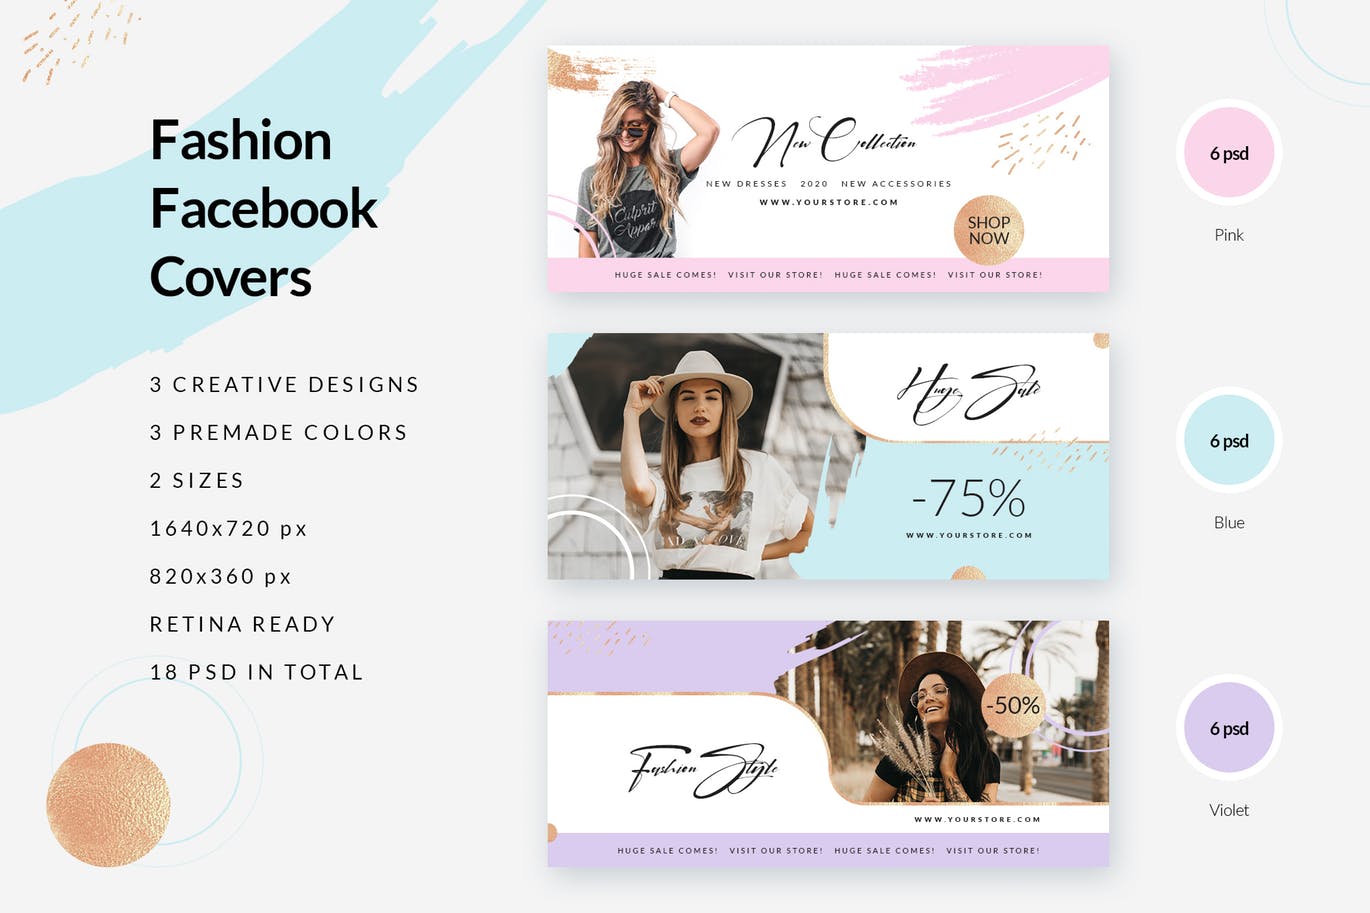 时尚品牌打折促销Facebook封面设计模板16图库精选 Fashion Facebook Covers插图